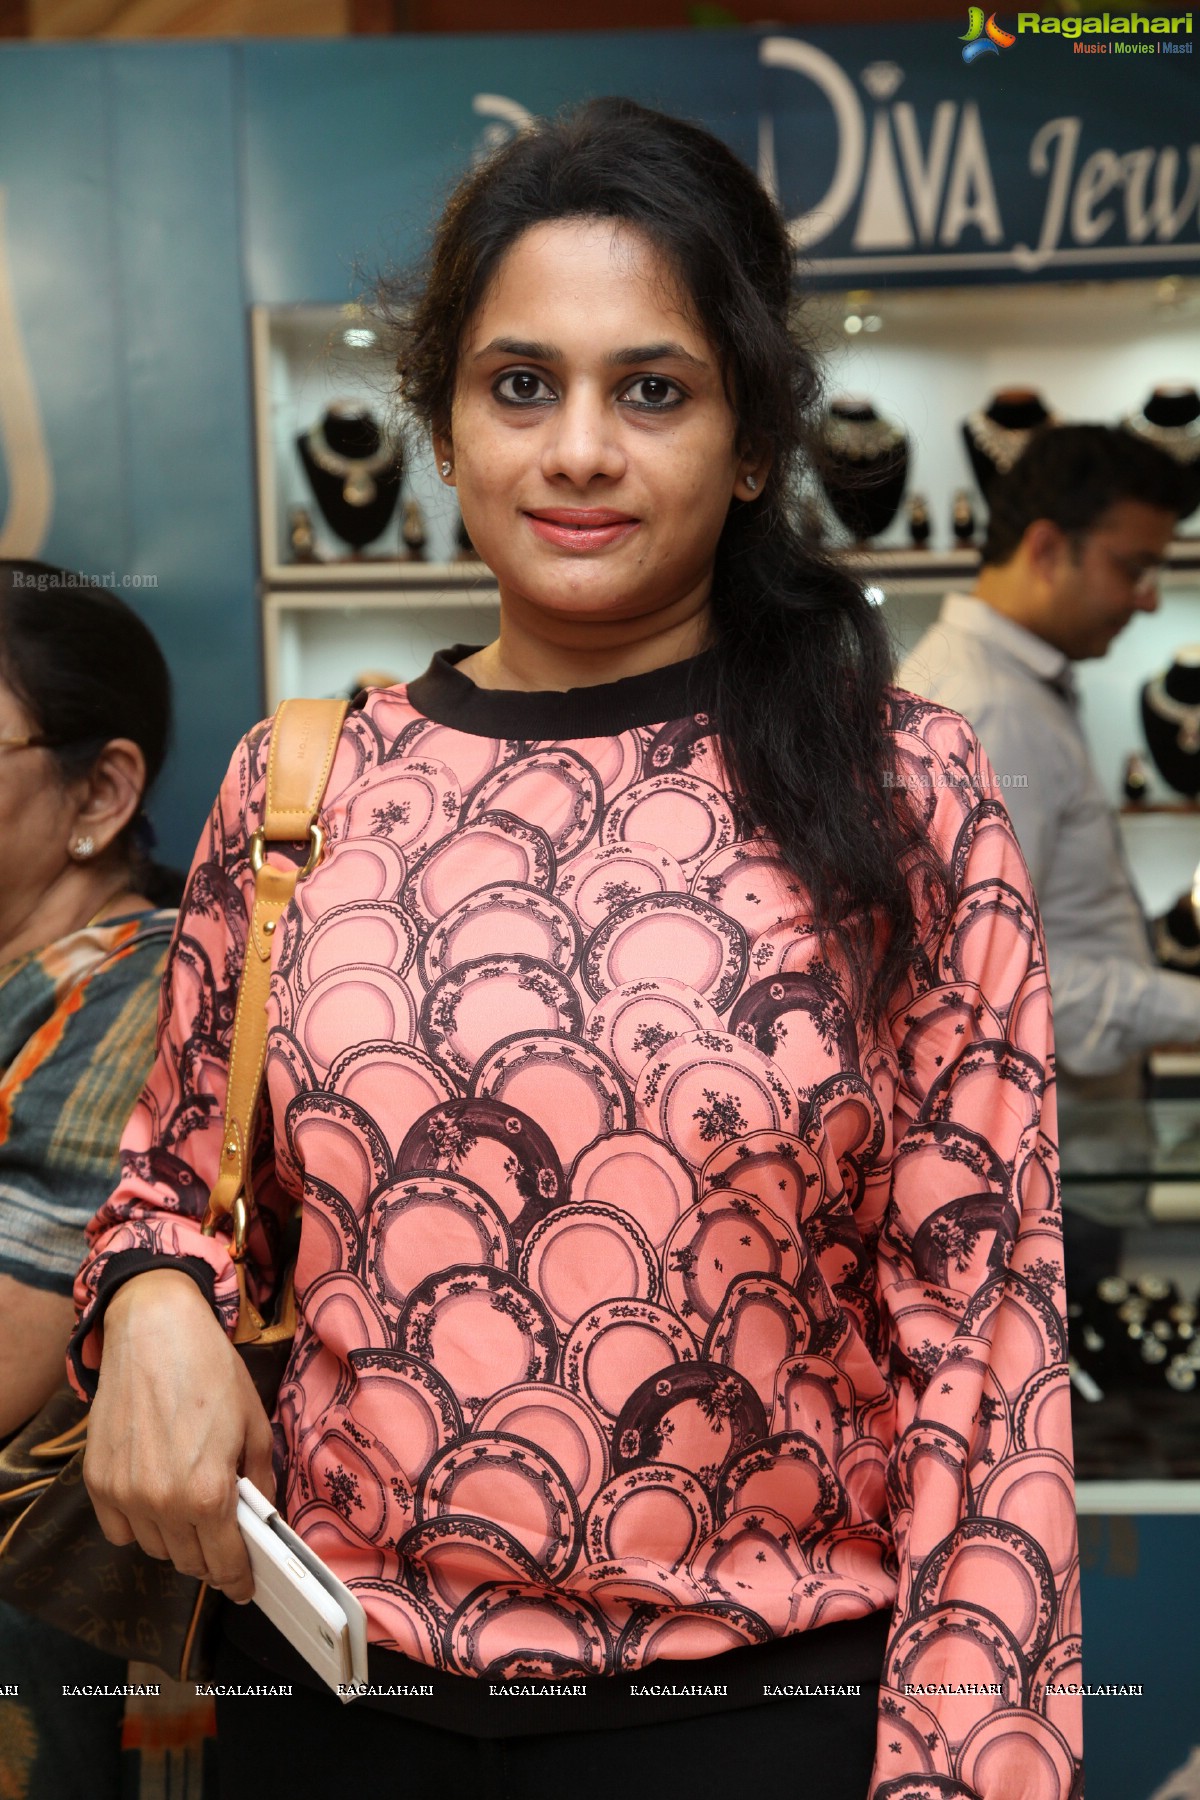 Petals Exhibition and Sale (Oct. 2015) at Taj Krishna, Hyderabad